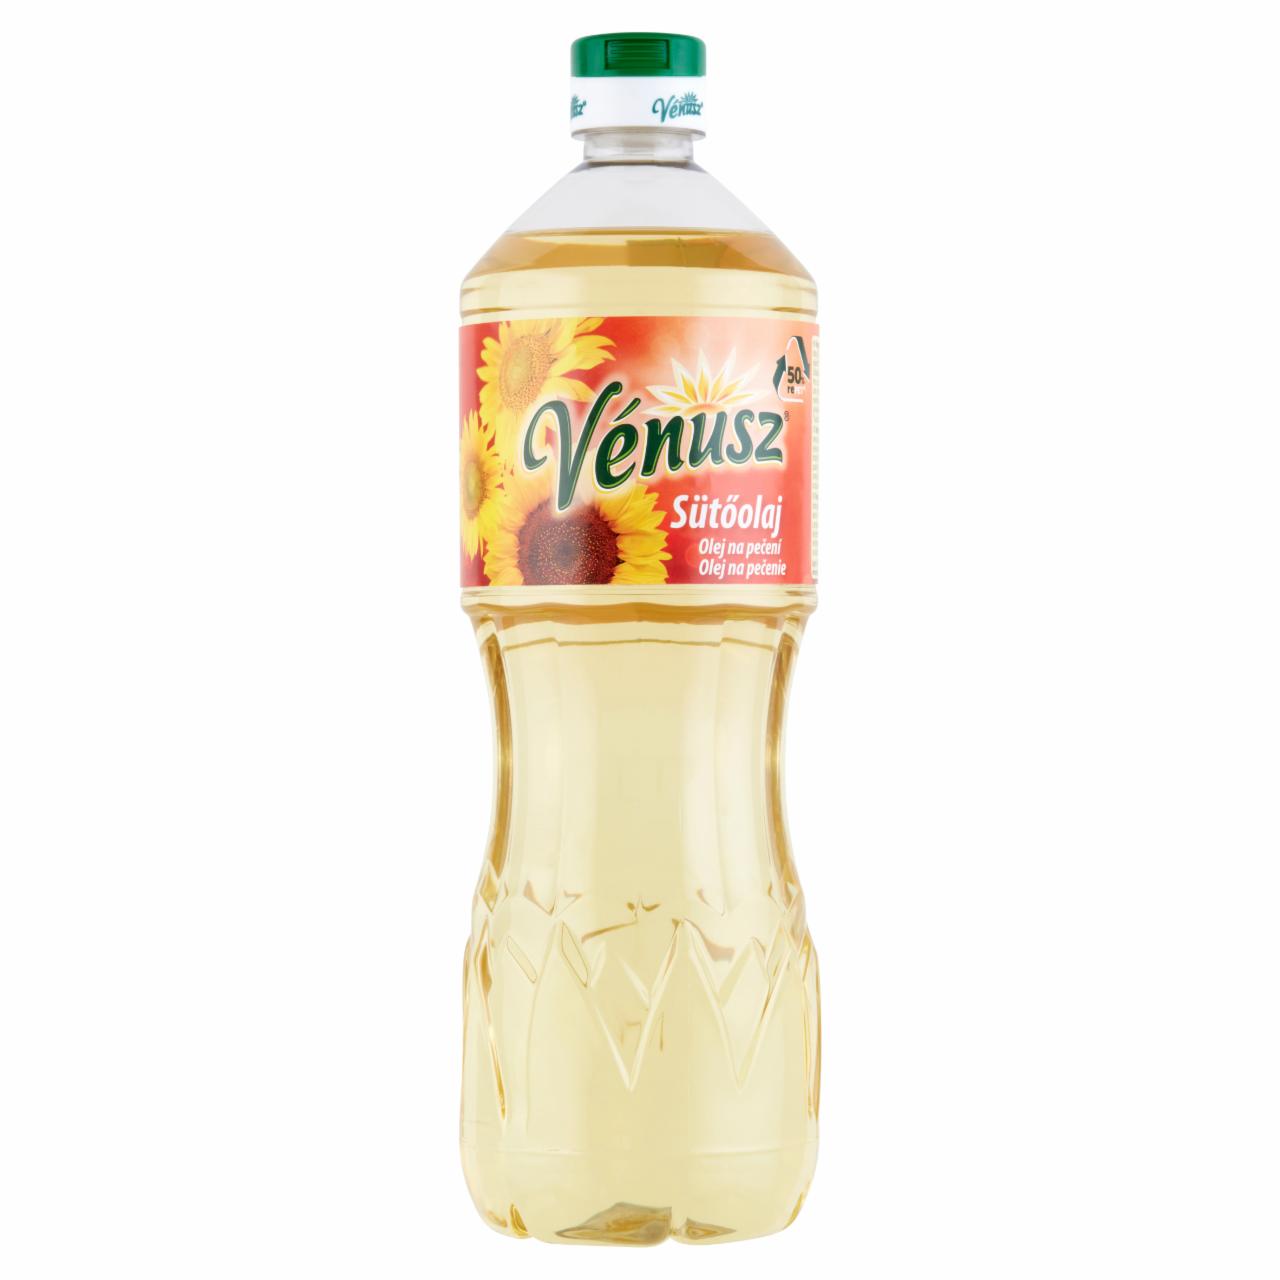 Képek - Vénusz sütőolaj 1 l